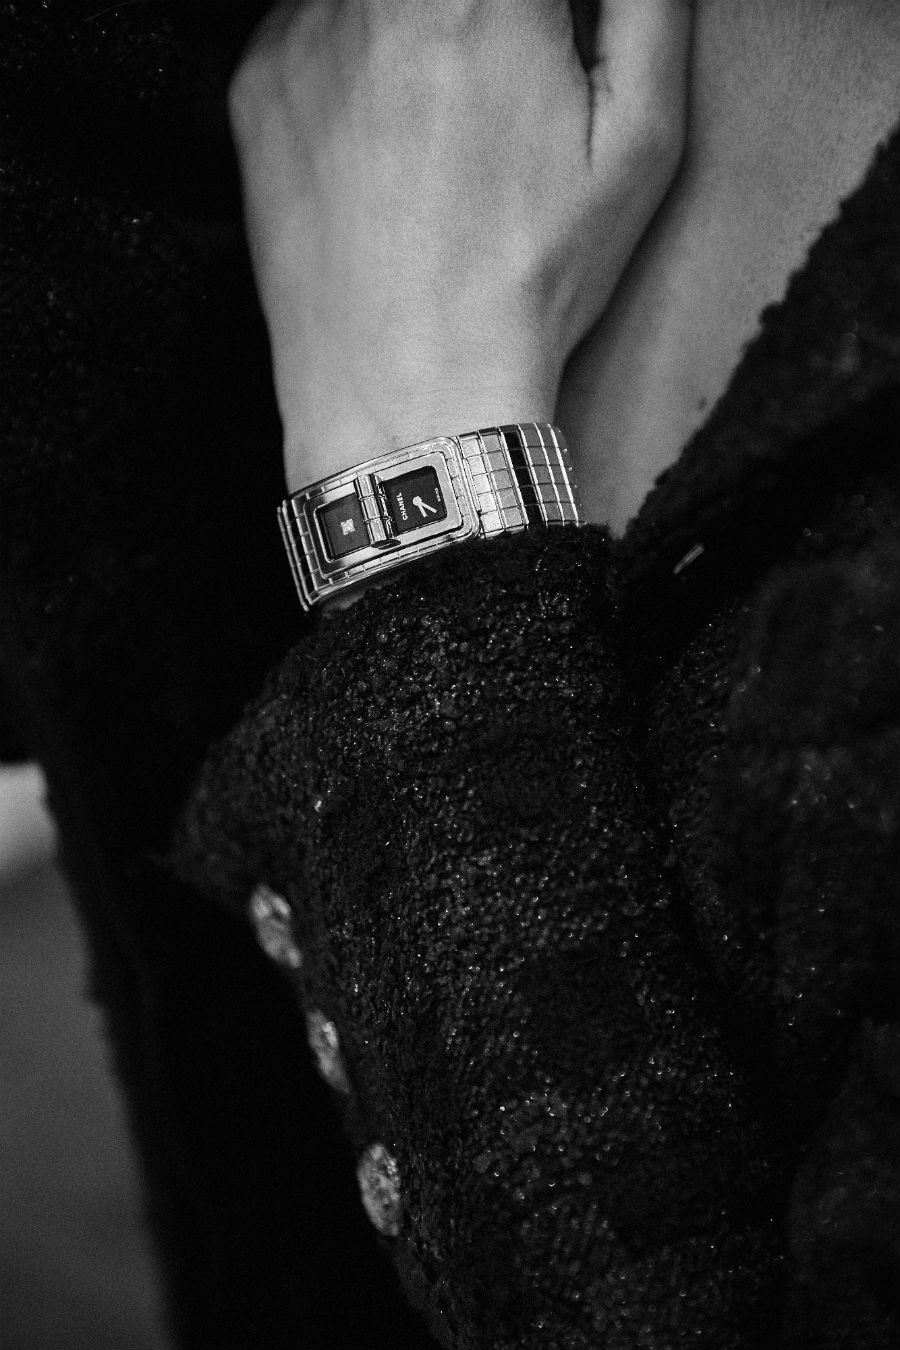 Chanel – Code Coco – Ref:H5144 – Orologio in acciaio, due quadranti laccati neri, di cui uno con un diamante taglio princess (0.05 cts) - Bracciale in acciaio - Movimento: Quarzo ad alta precisione - Impermeabilità 30 m - Misure: 38,1 x 21,5 x 7,8 mm. Photo ©The Ducker Magazine